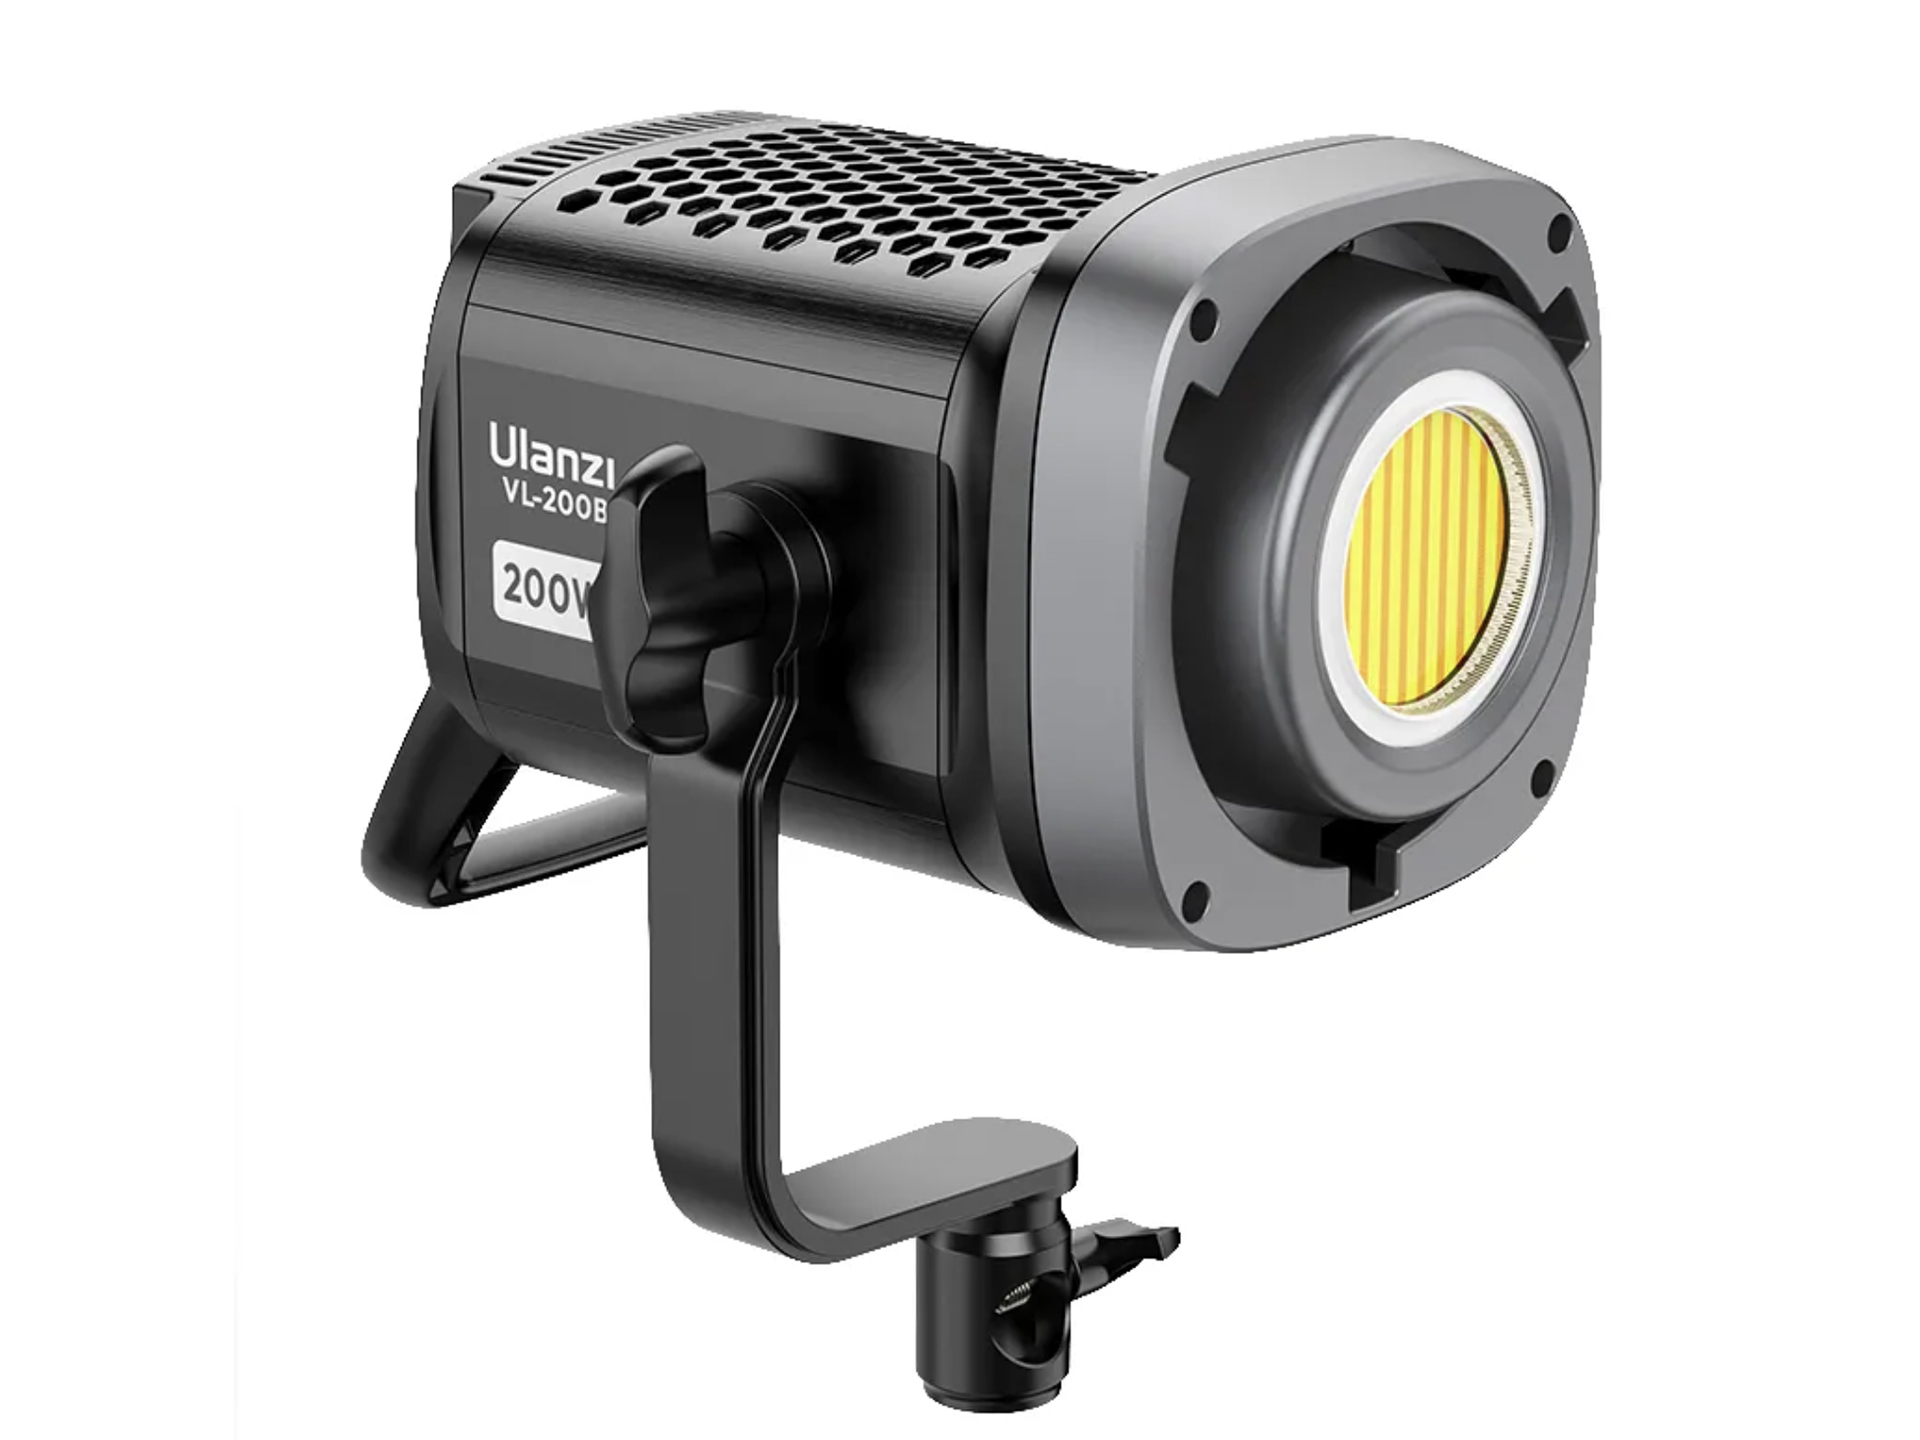 Ulanziが撮影用LEDライト「Vマウント」シリーズをリリース - デジカメ Watch